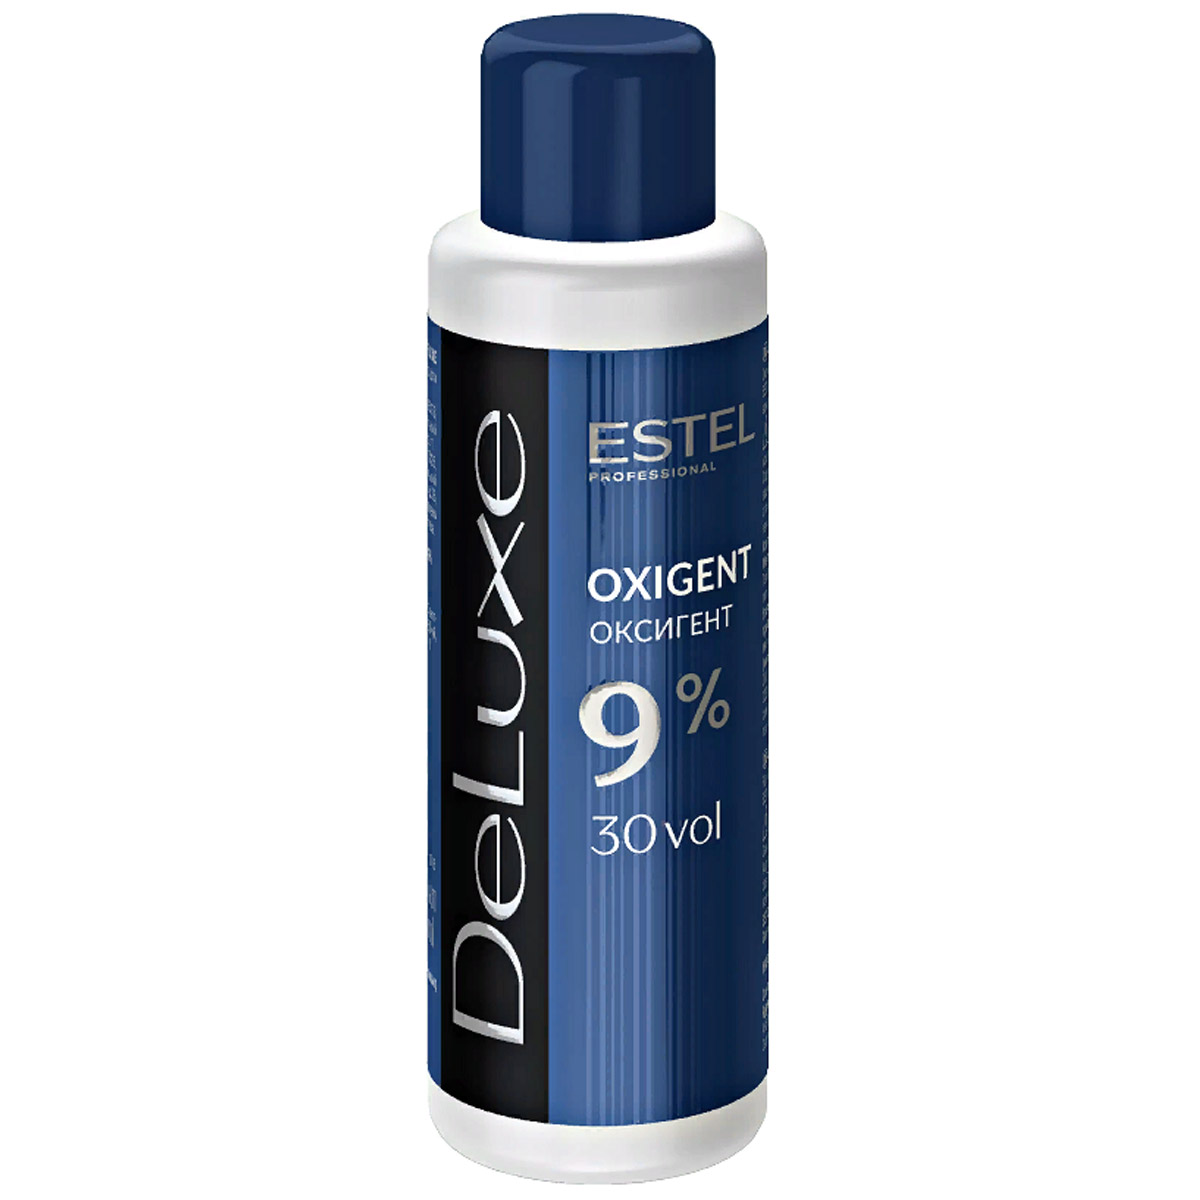 Estel Оксигент De Luxe 9%, 60 мл (Estel, De luxe) estel шампунь для волос стабилизатор цвета 1000 мл estel de luxe